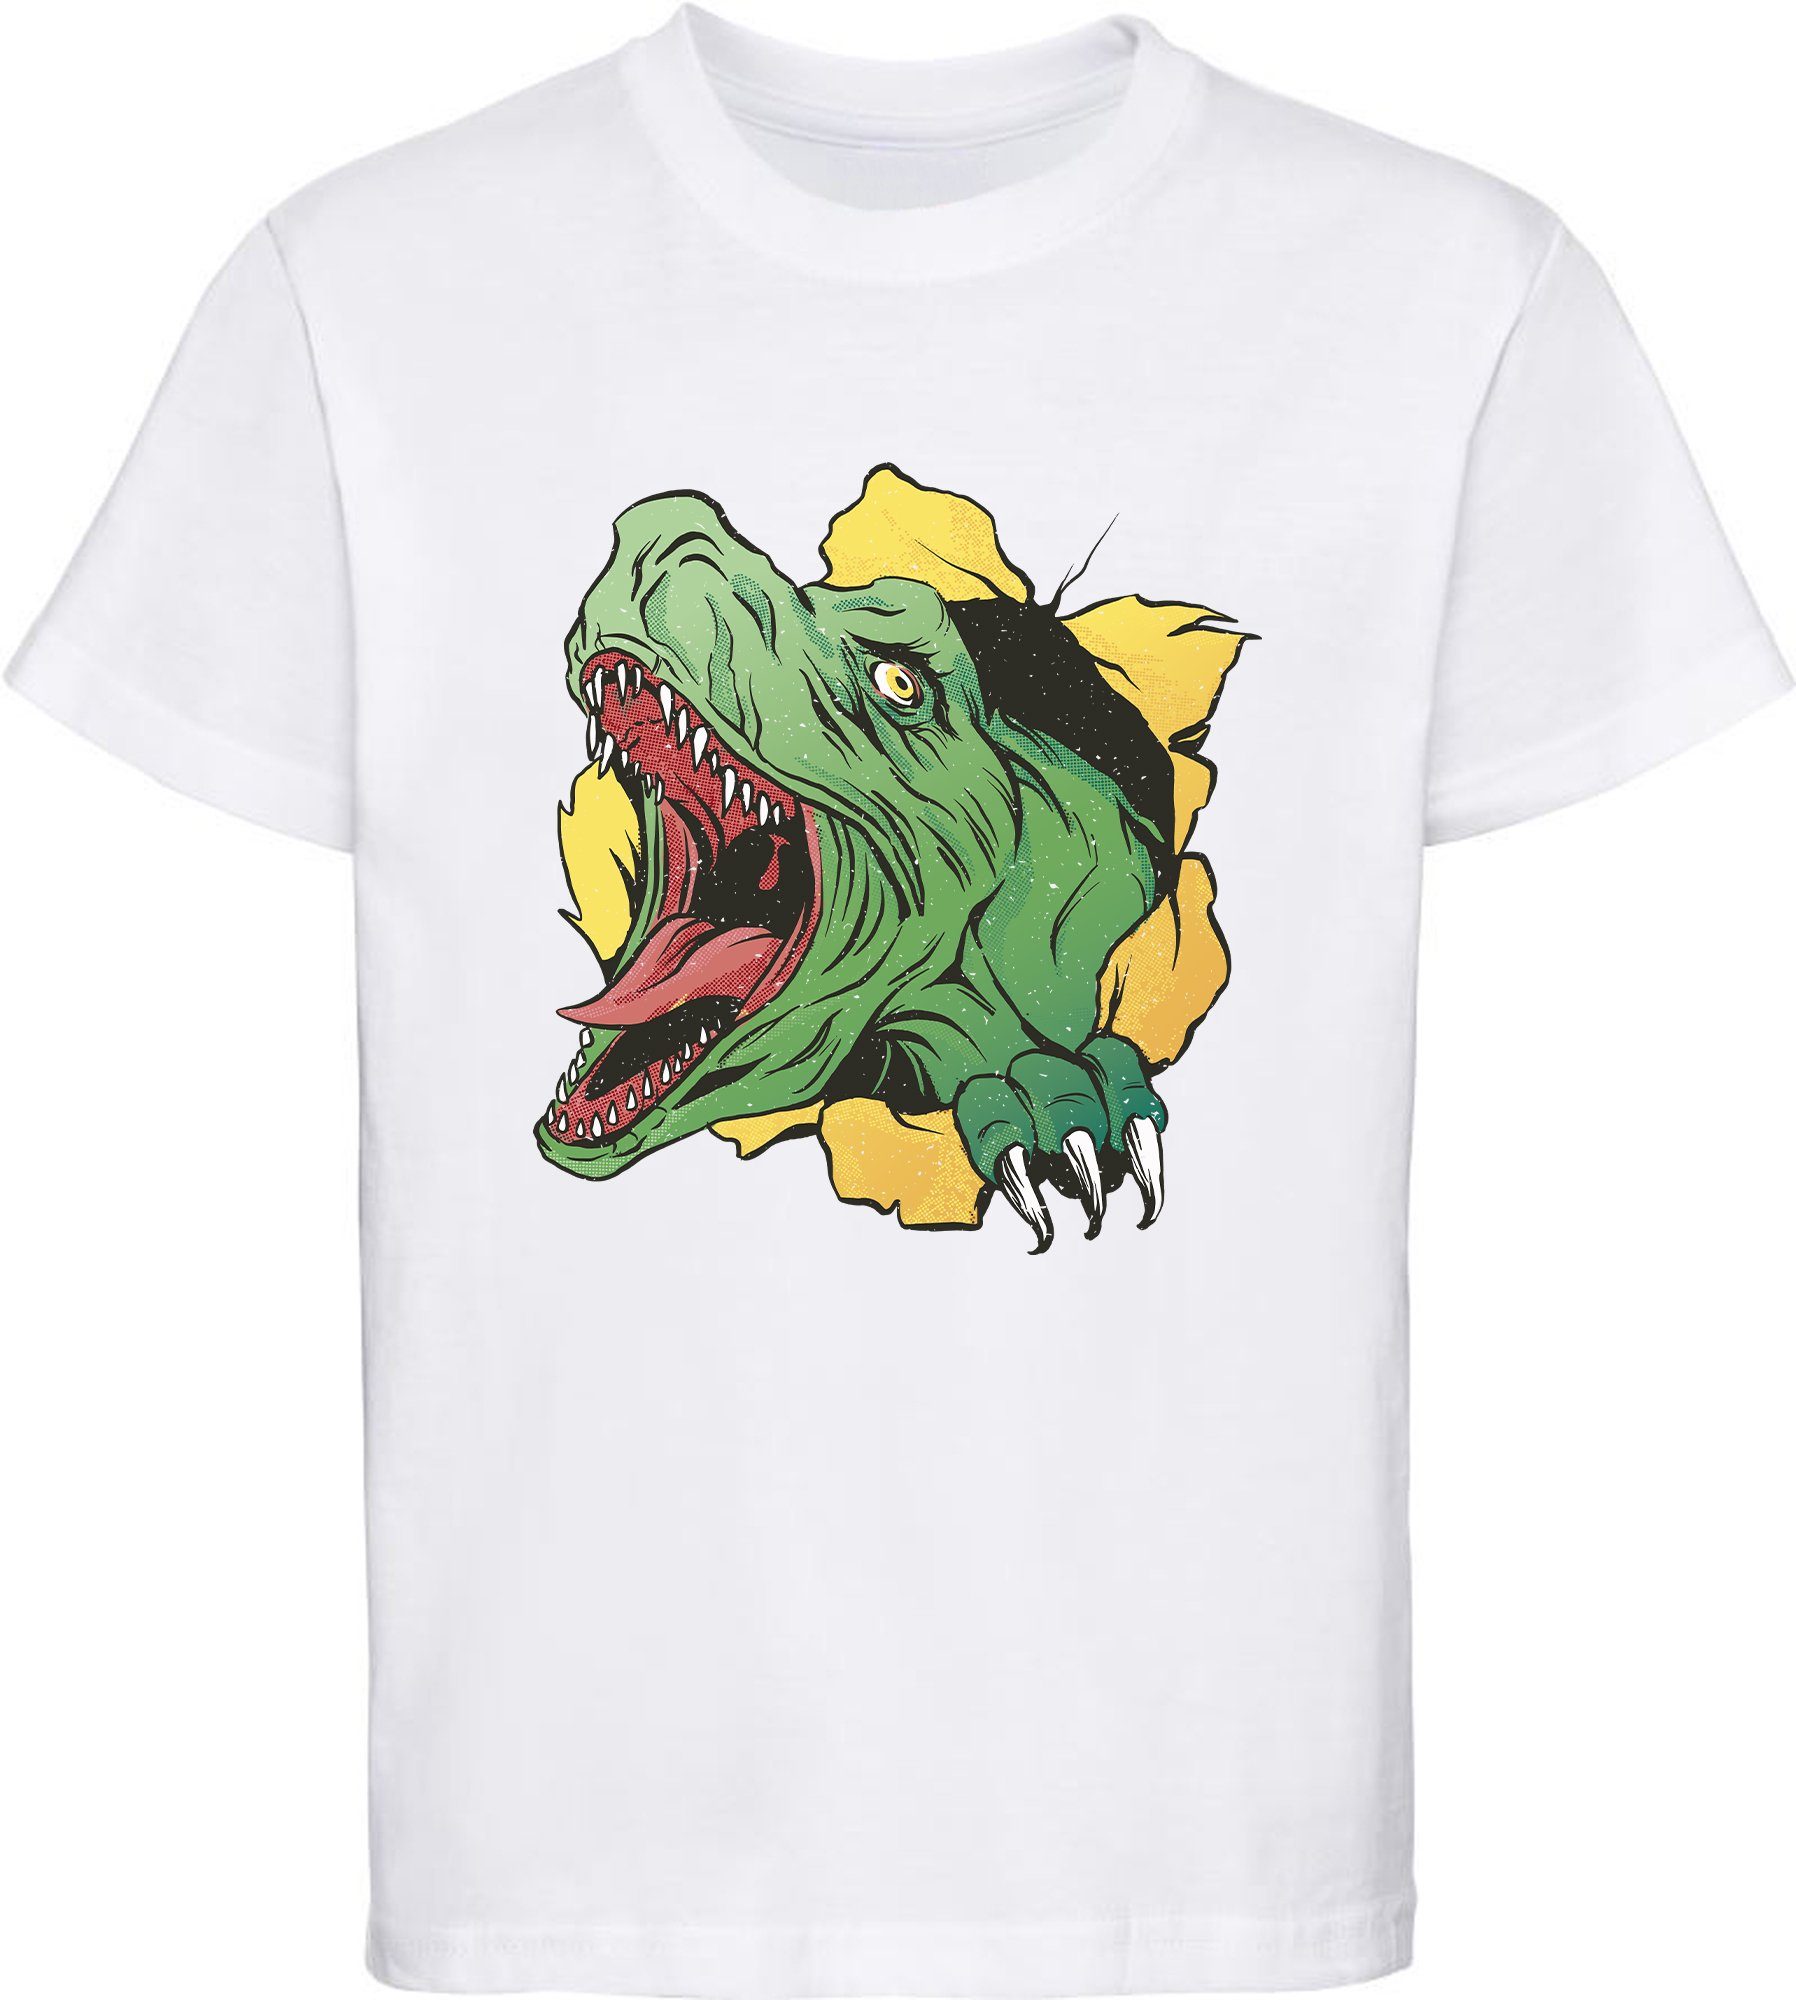 MyDesign24 Print-Shirt bedrucktes Kinder T-Shirt mit T-Rex Kopf Baumwollshirt mit Dino, schwarz, weiß, rot, blau, i68 weiss